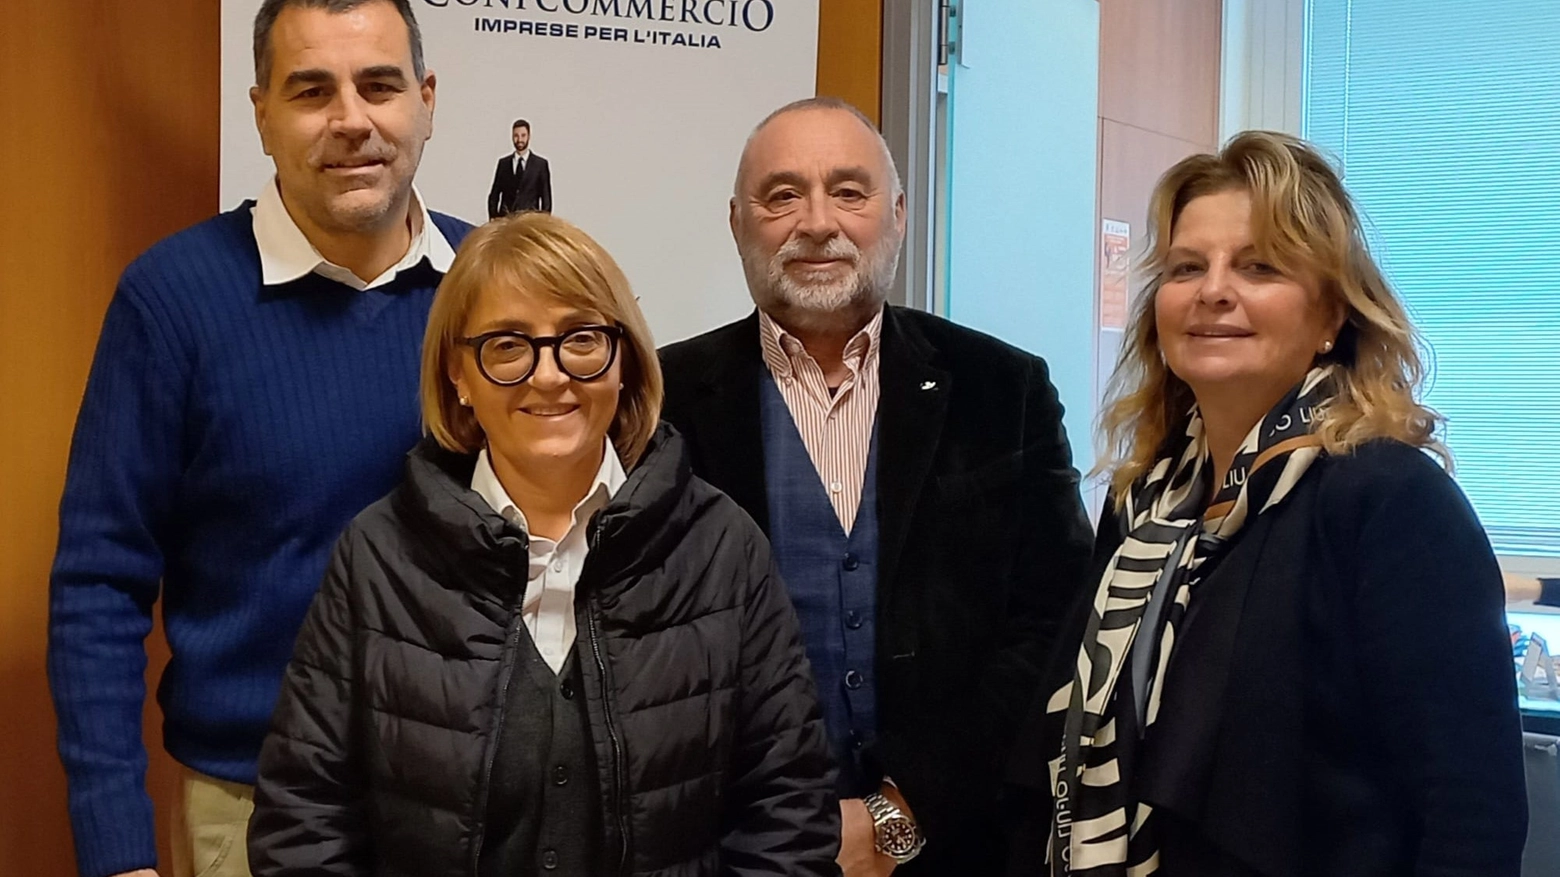 Nella foto Alessio Schiano, Giovanni Neri, Ursula Ida Pareti, Marina Calvaresi